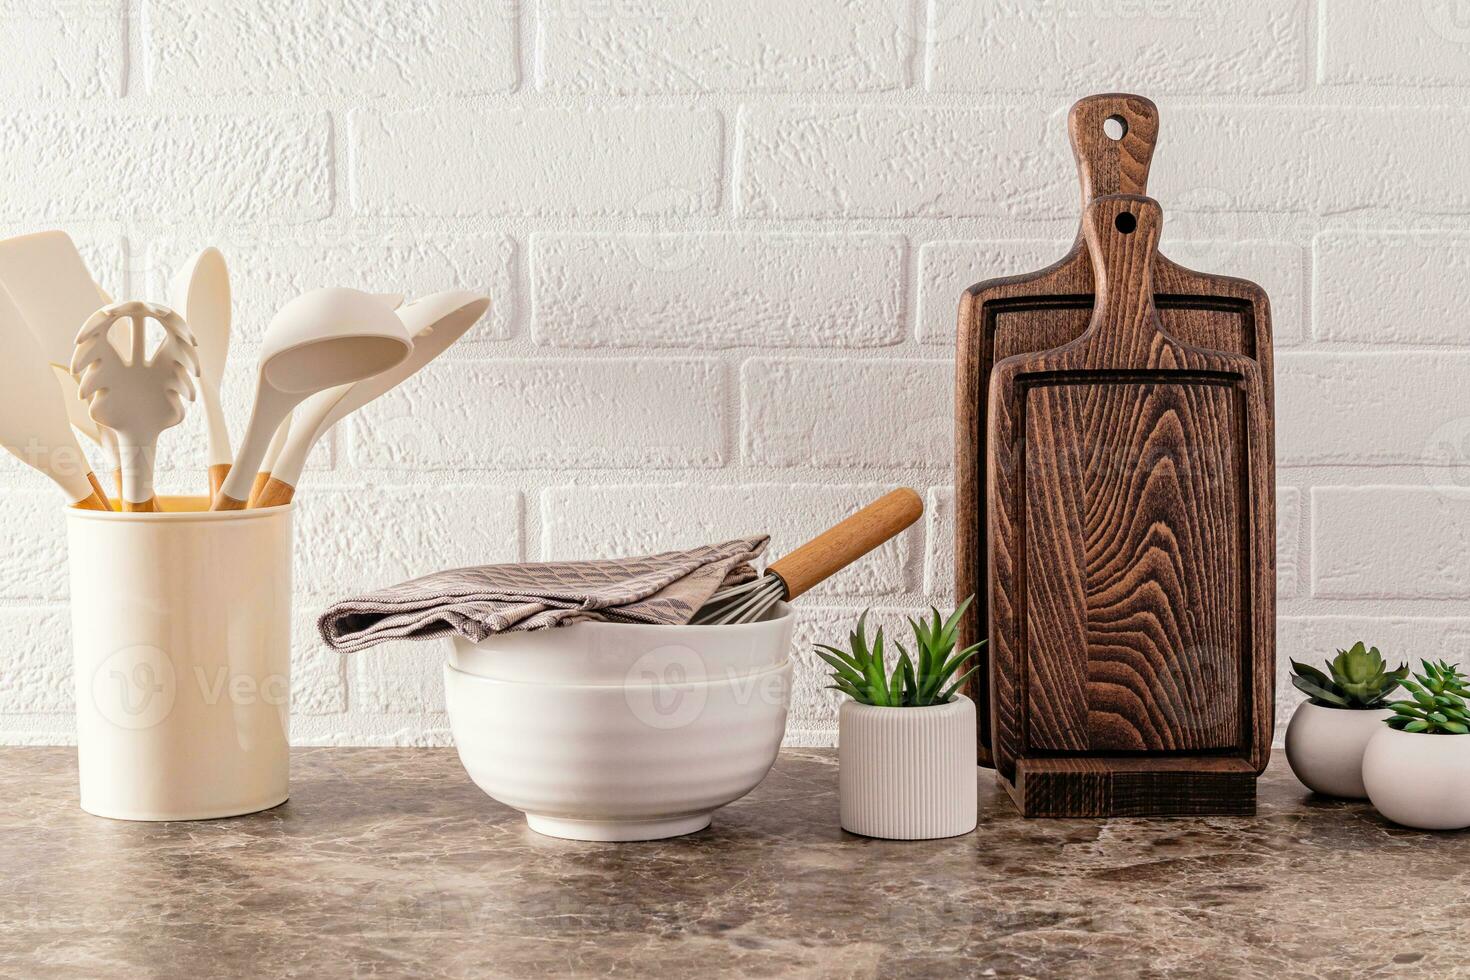 cozinha utensílios fez do ambientalmente amigáveis materiais em uma moderno mármore bancada com interior flores branco tijolo muro. foto